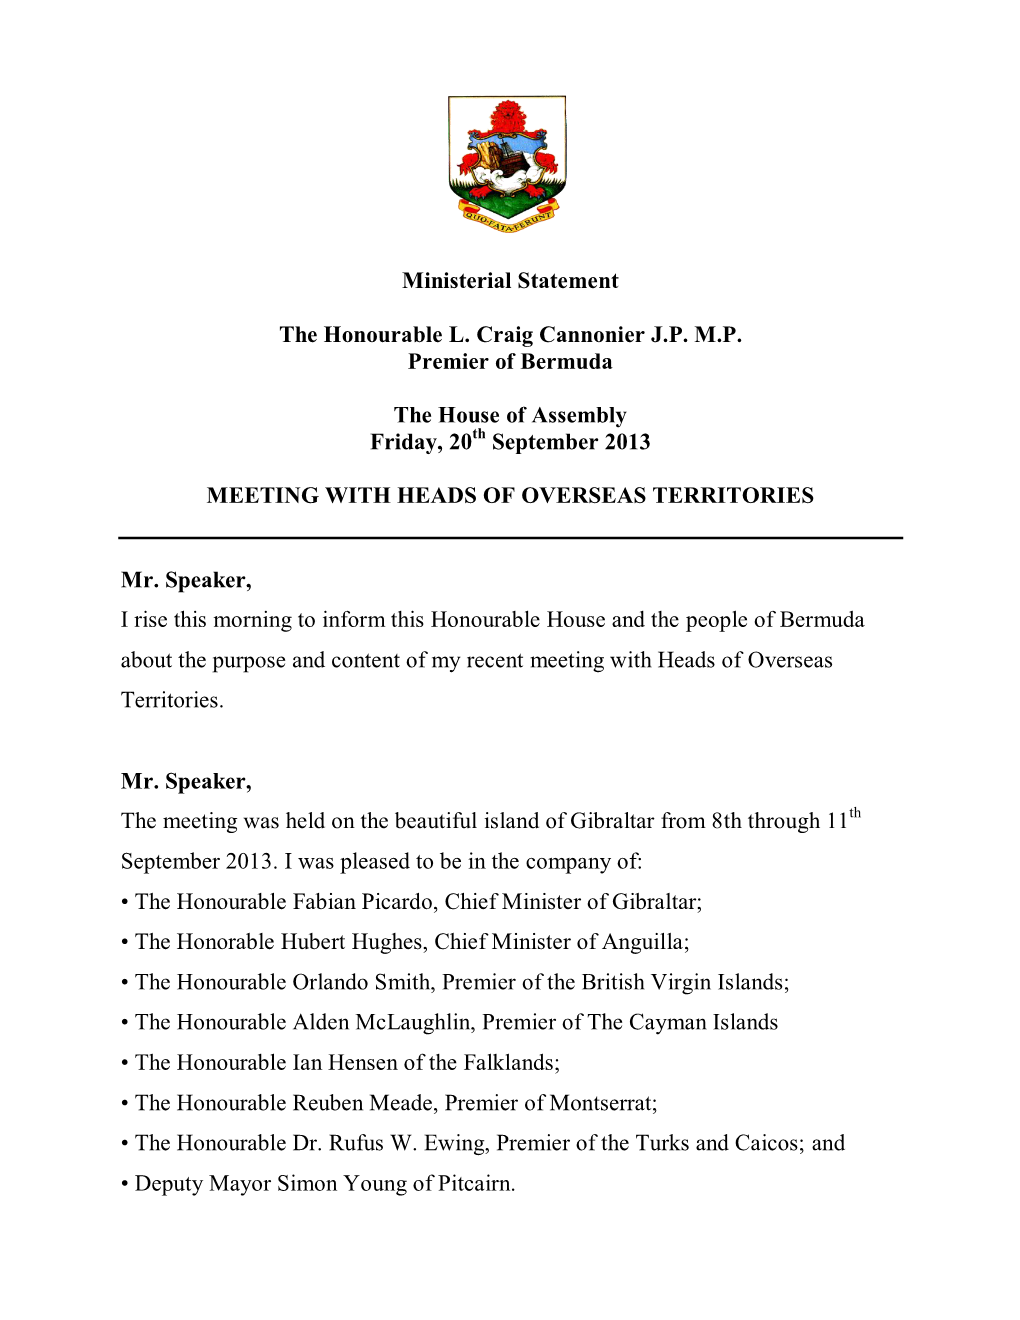 Ministerial Statement the Honourable L. Craig Cannonier J.P. M.P